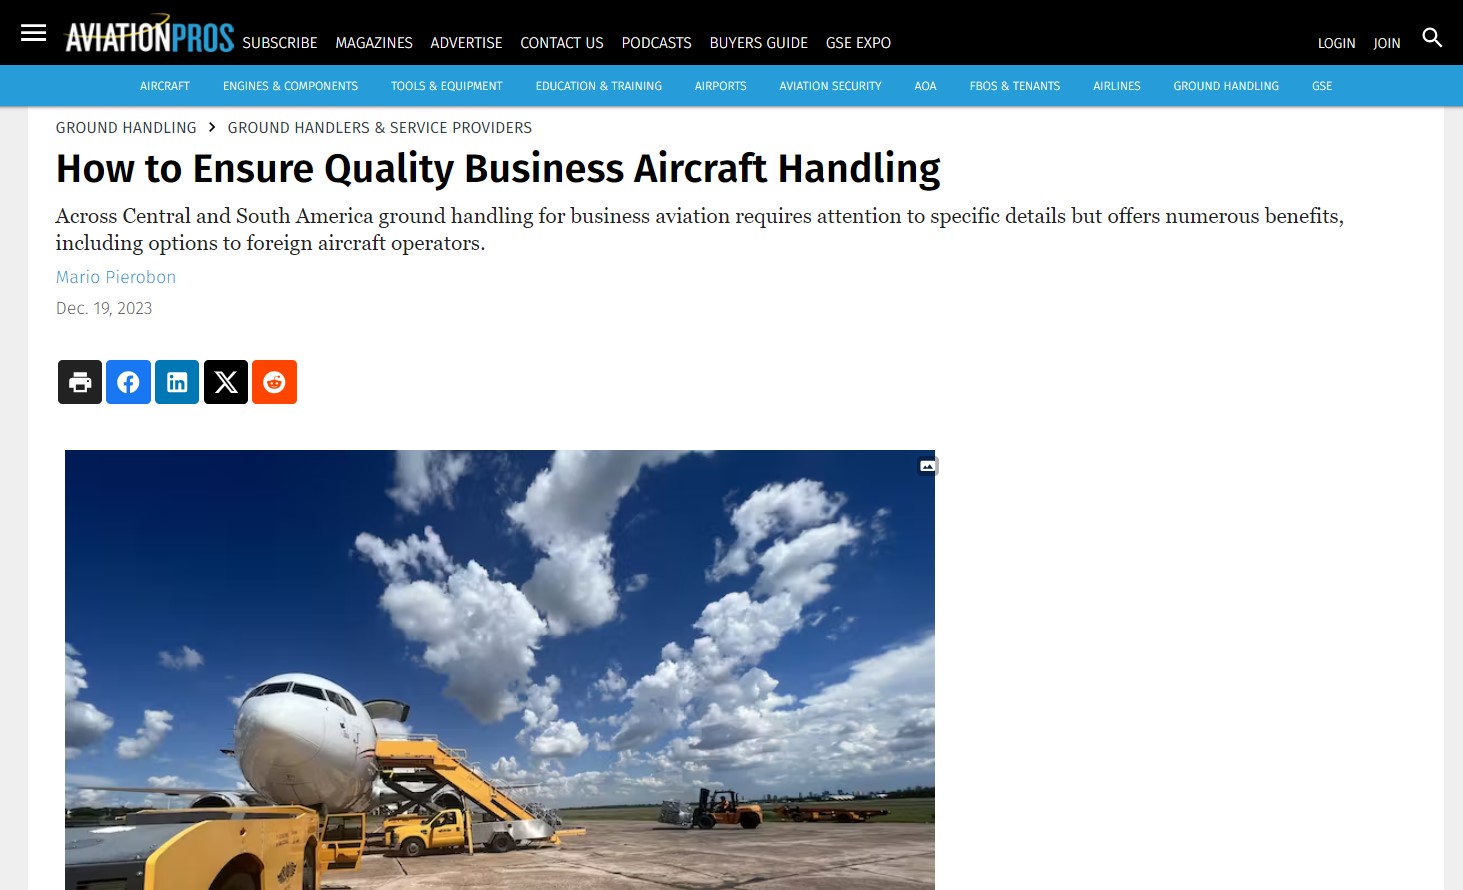 Captura de tela da matéria "How to ensure quality business aircraft handling"